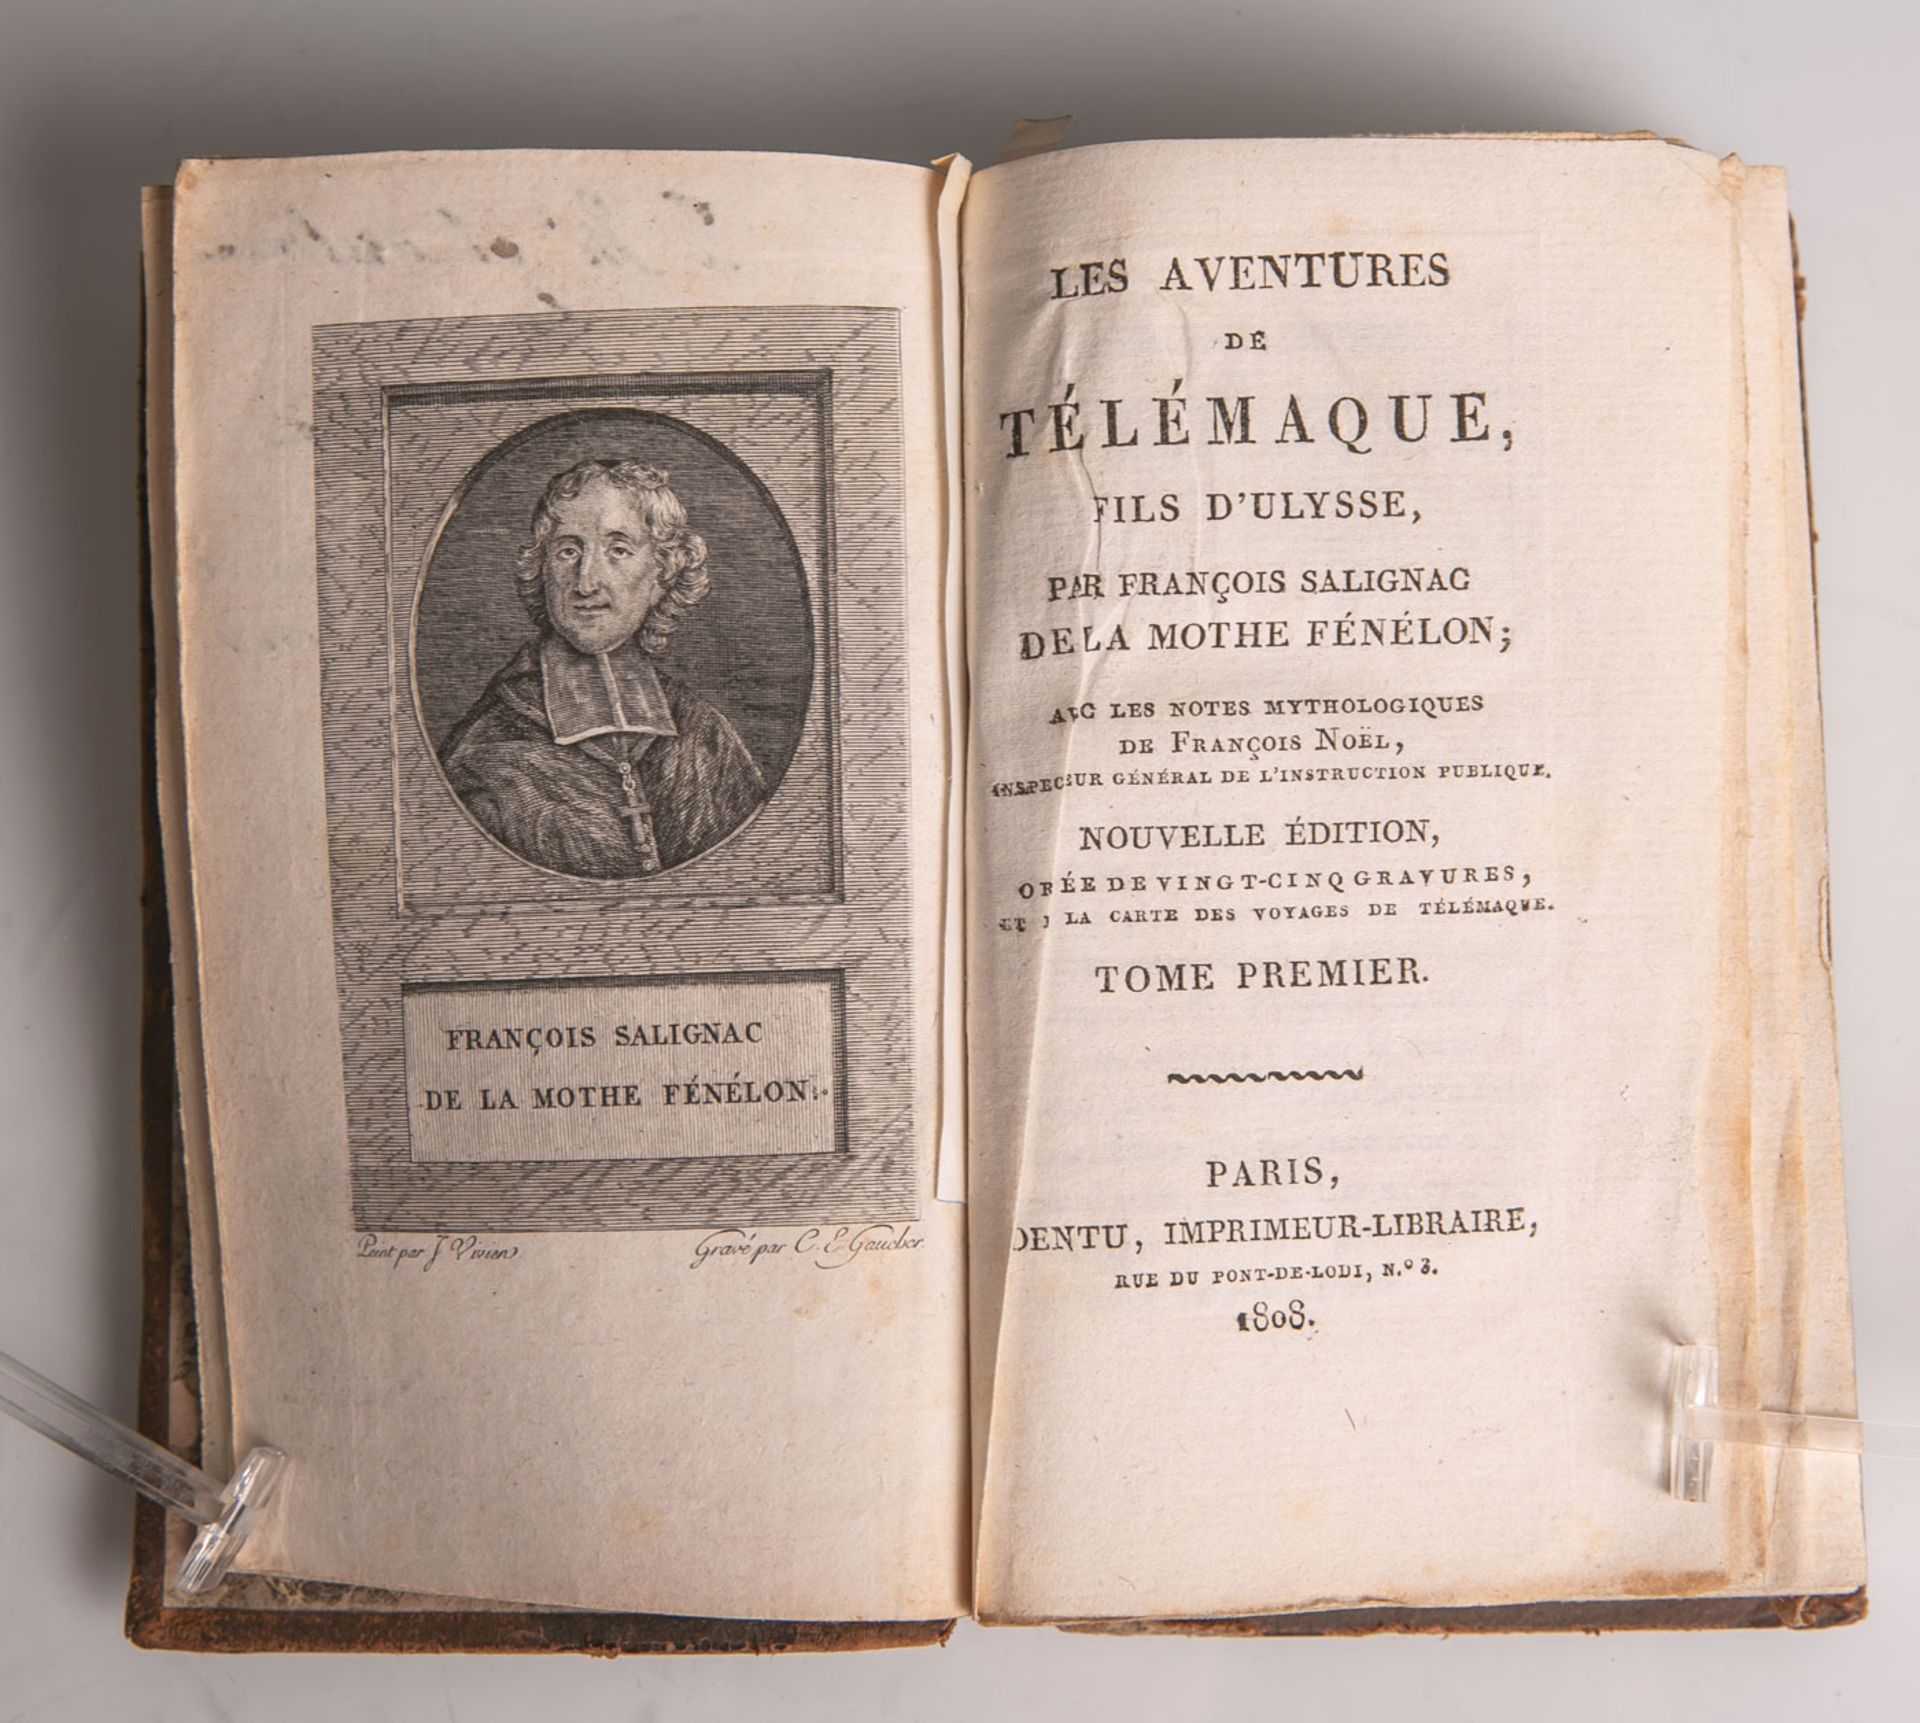 Les Aventures de Tlemaque, Fils D'Ulysse, neue Ausgabe, Band 1, Imprimeur-Libraire, Paris1808, 296